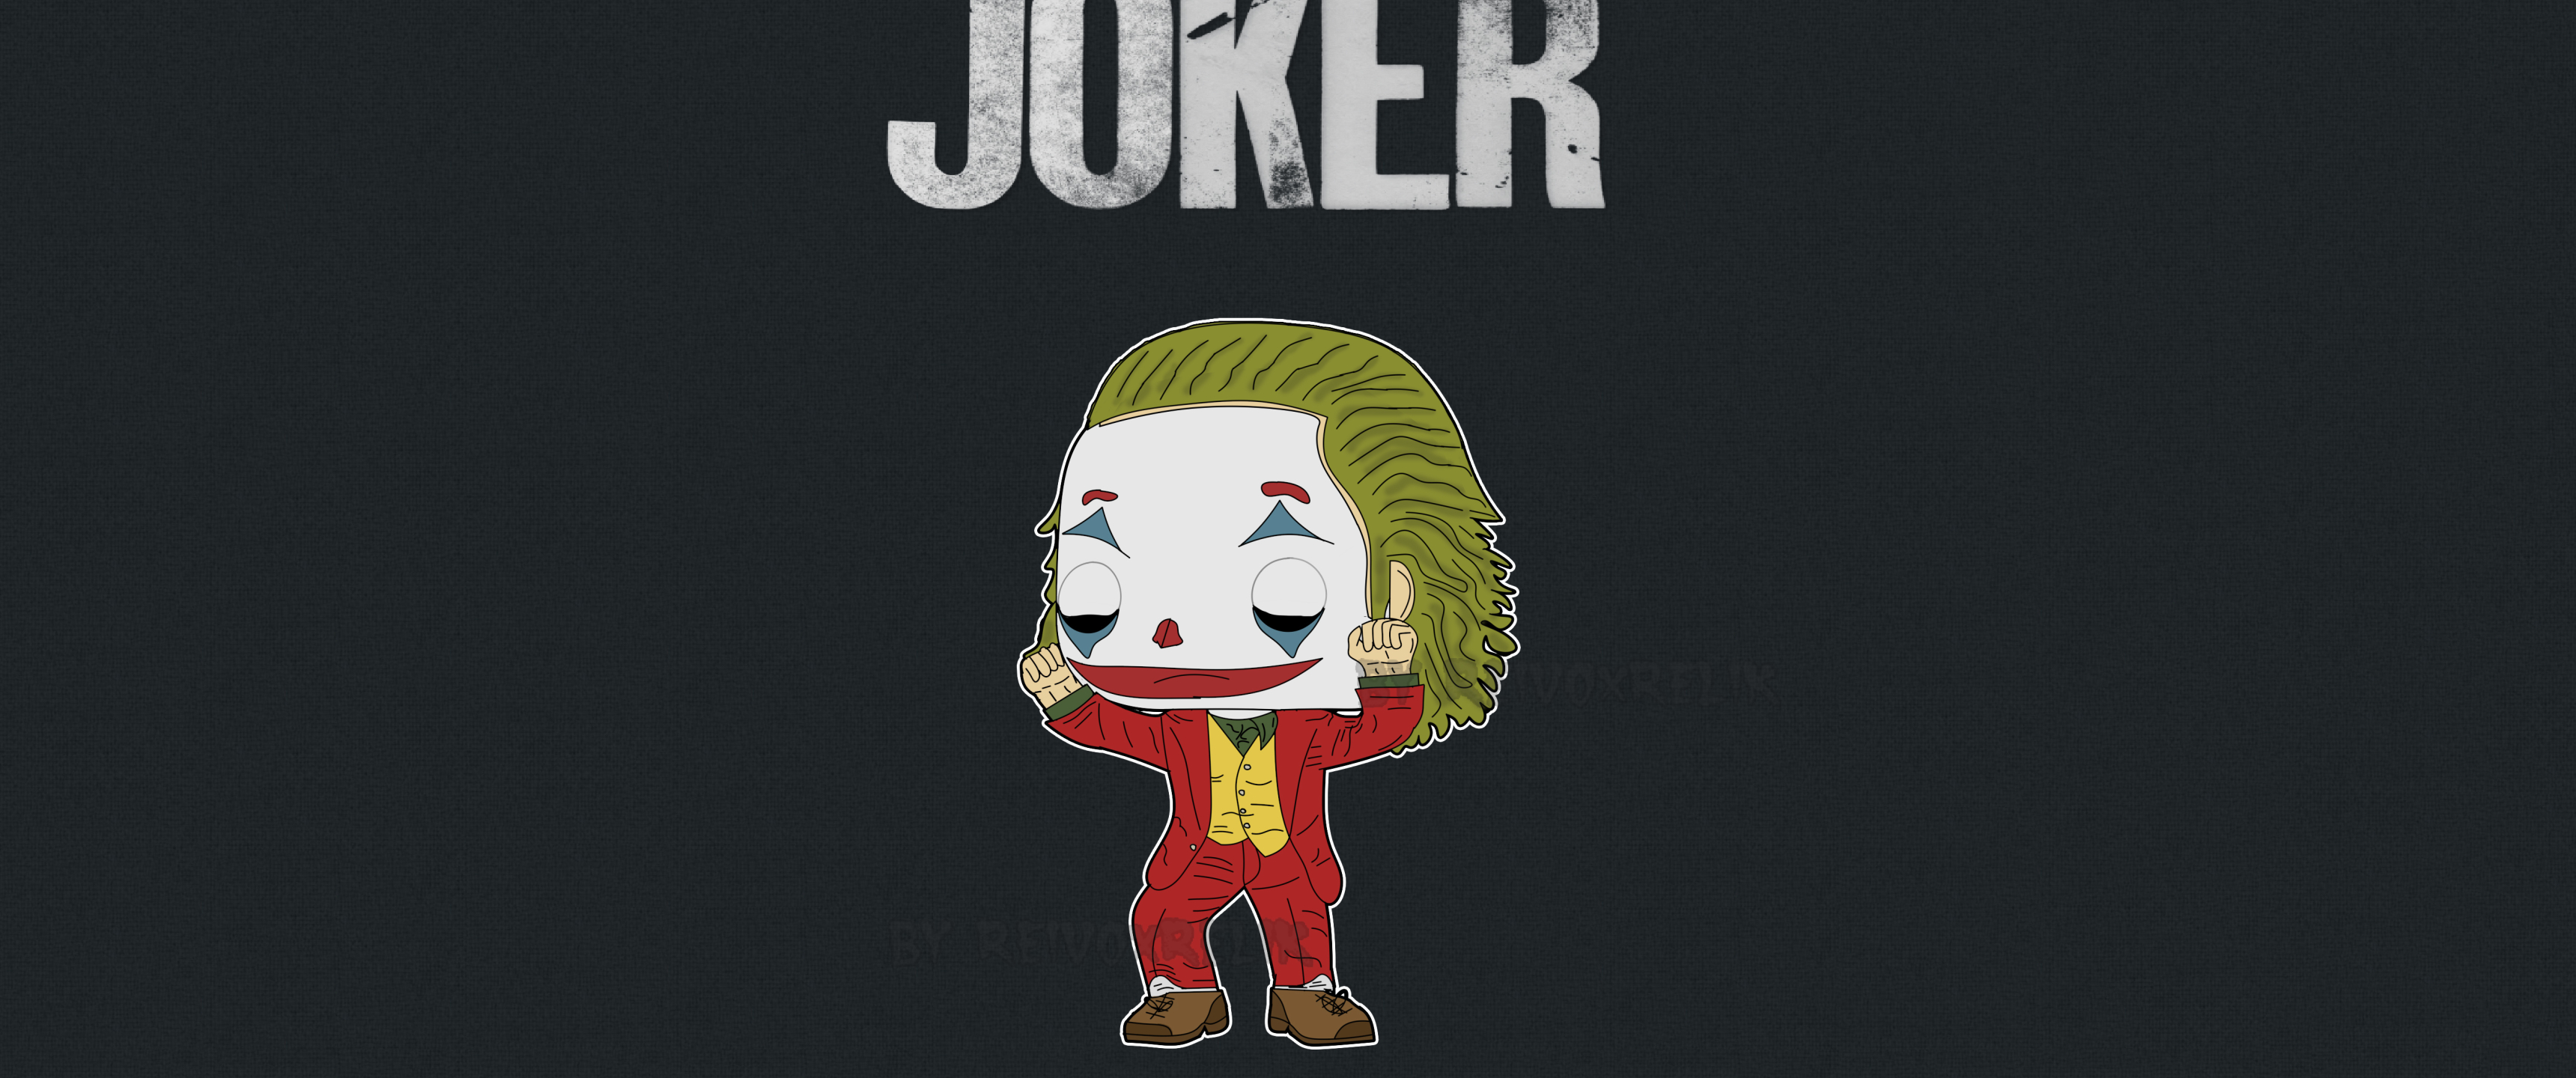 3440x1440 Joker Cartoon Art 3440x1440 Resolution Wallpaper Hd Superheroes 4k Wallpapers Images 